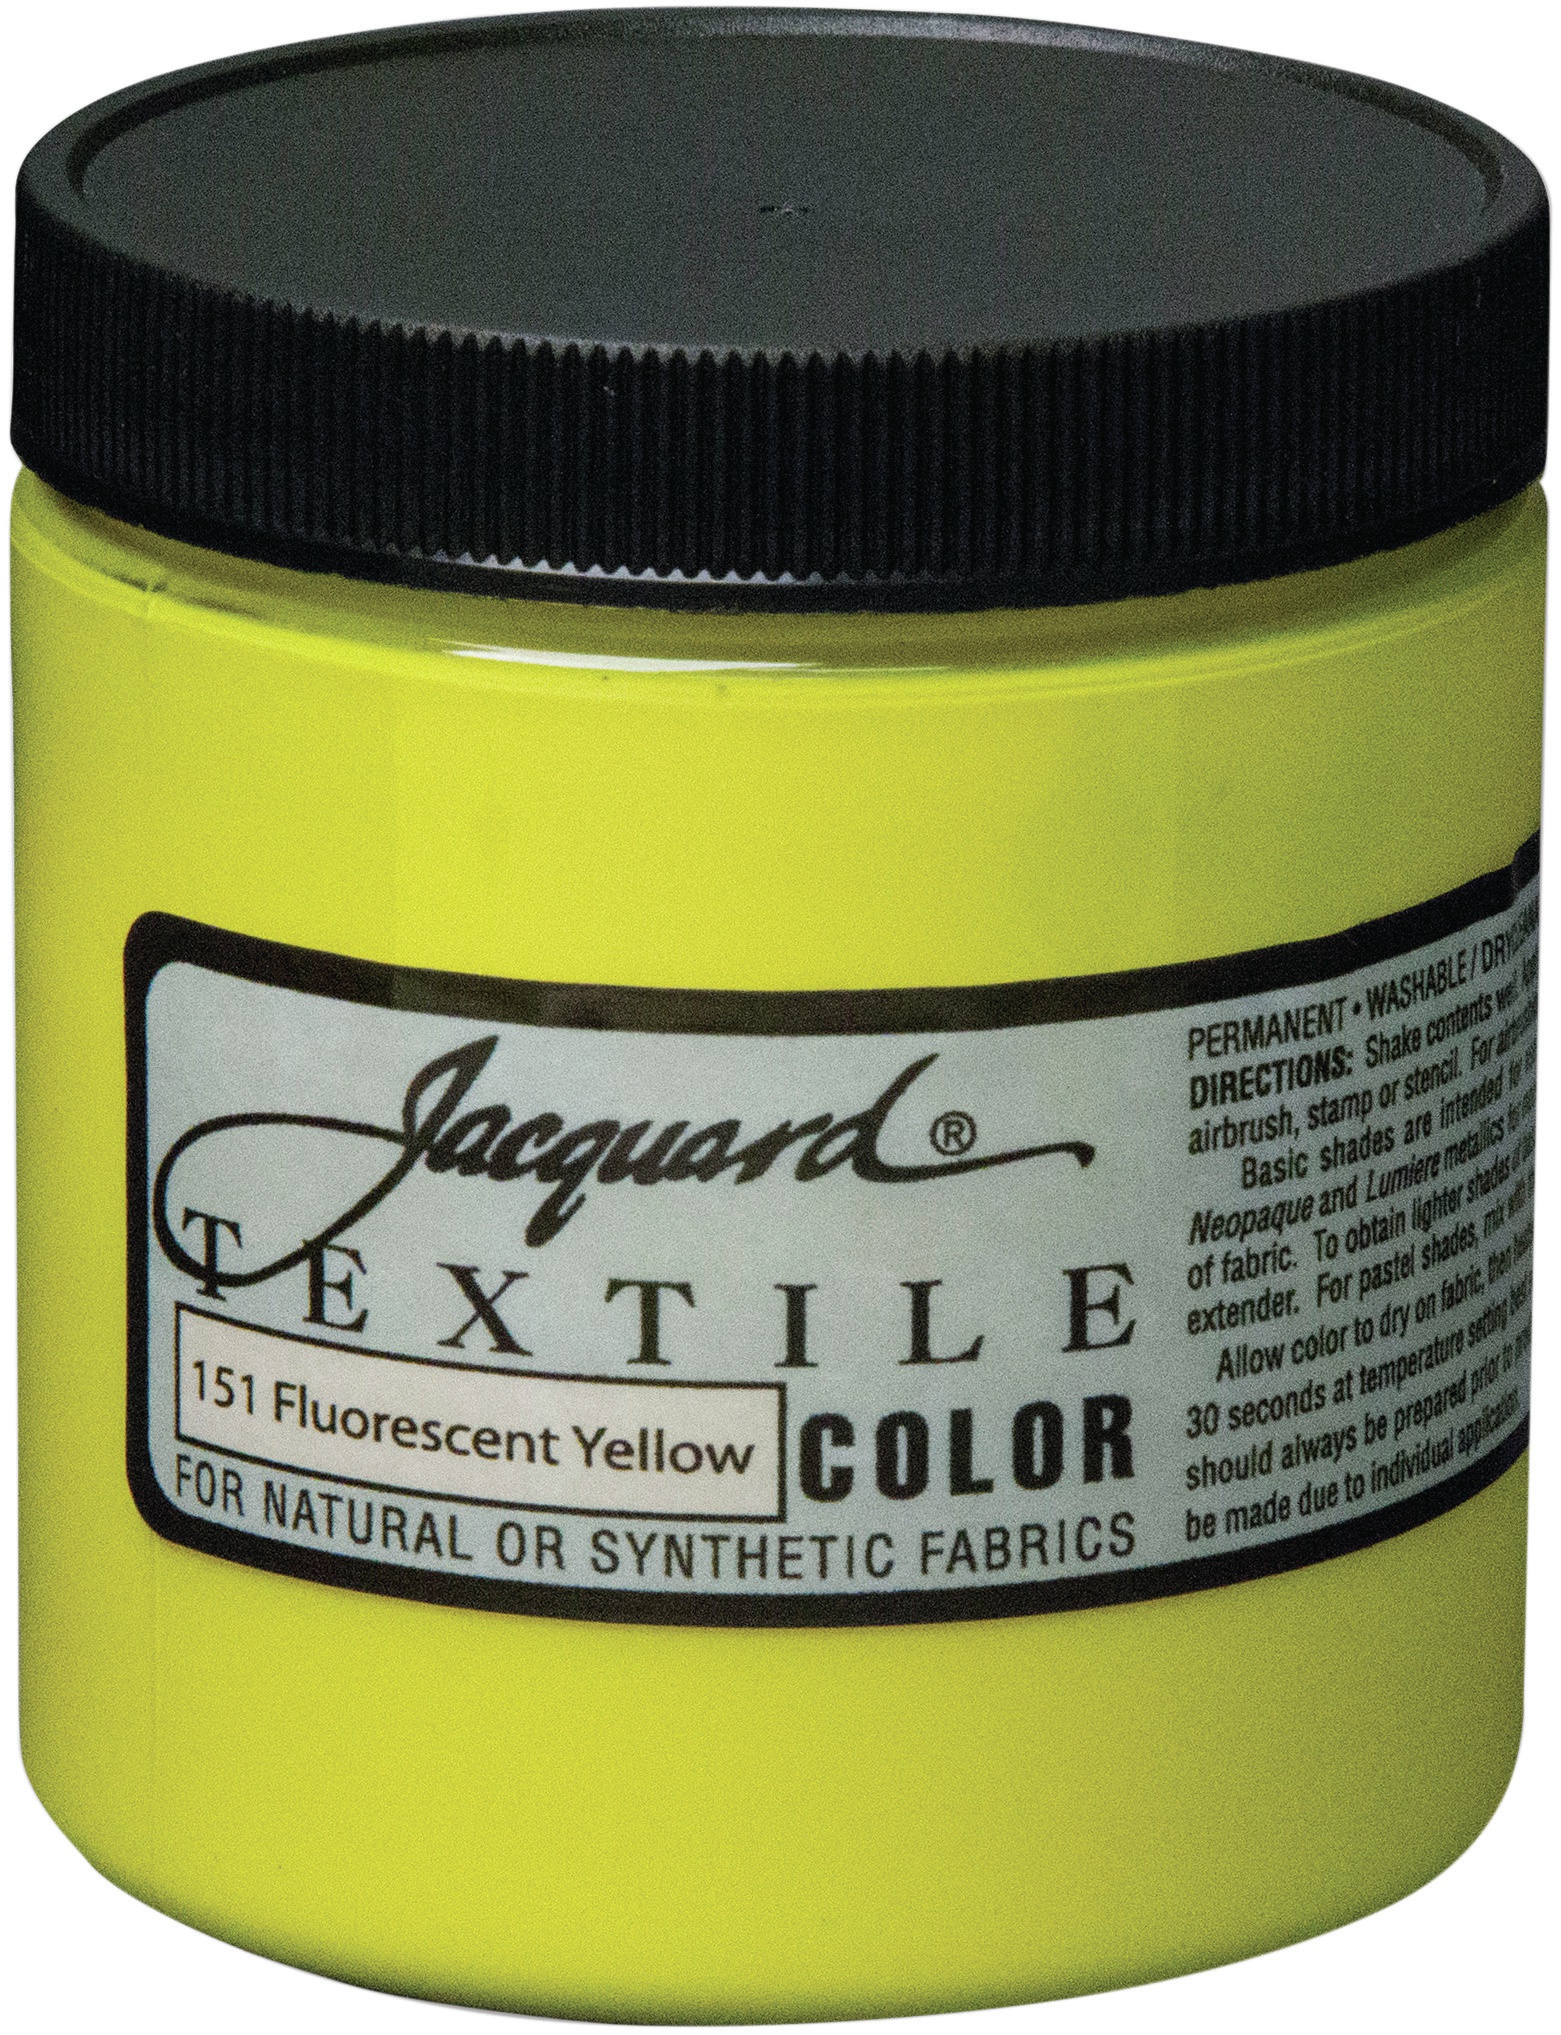 Jacquard Textile Color Fabric Paint 8oz-Fluorescent Yellow | eBay